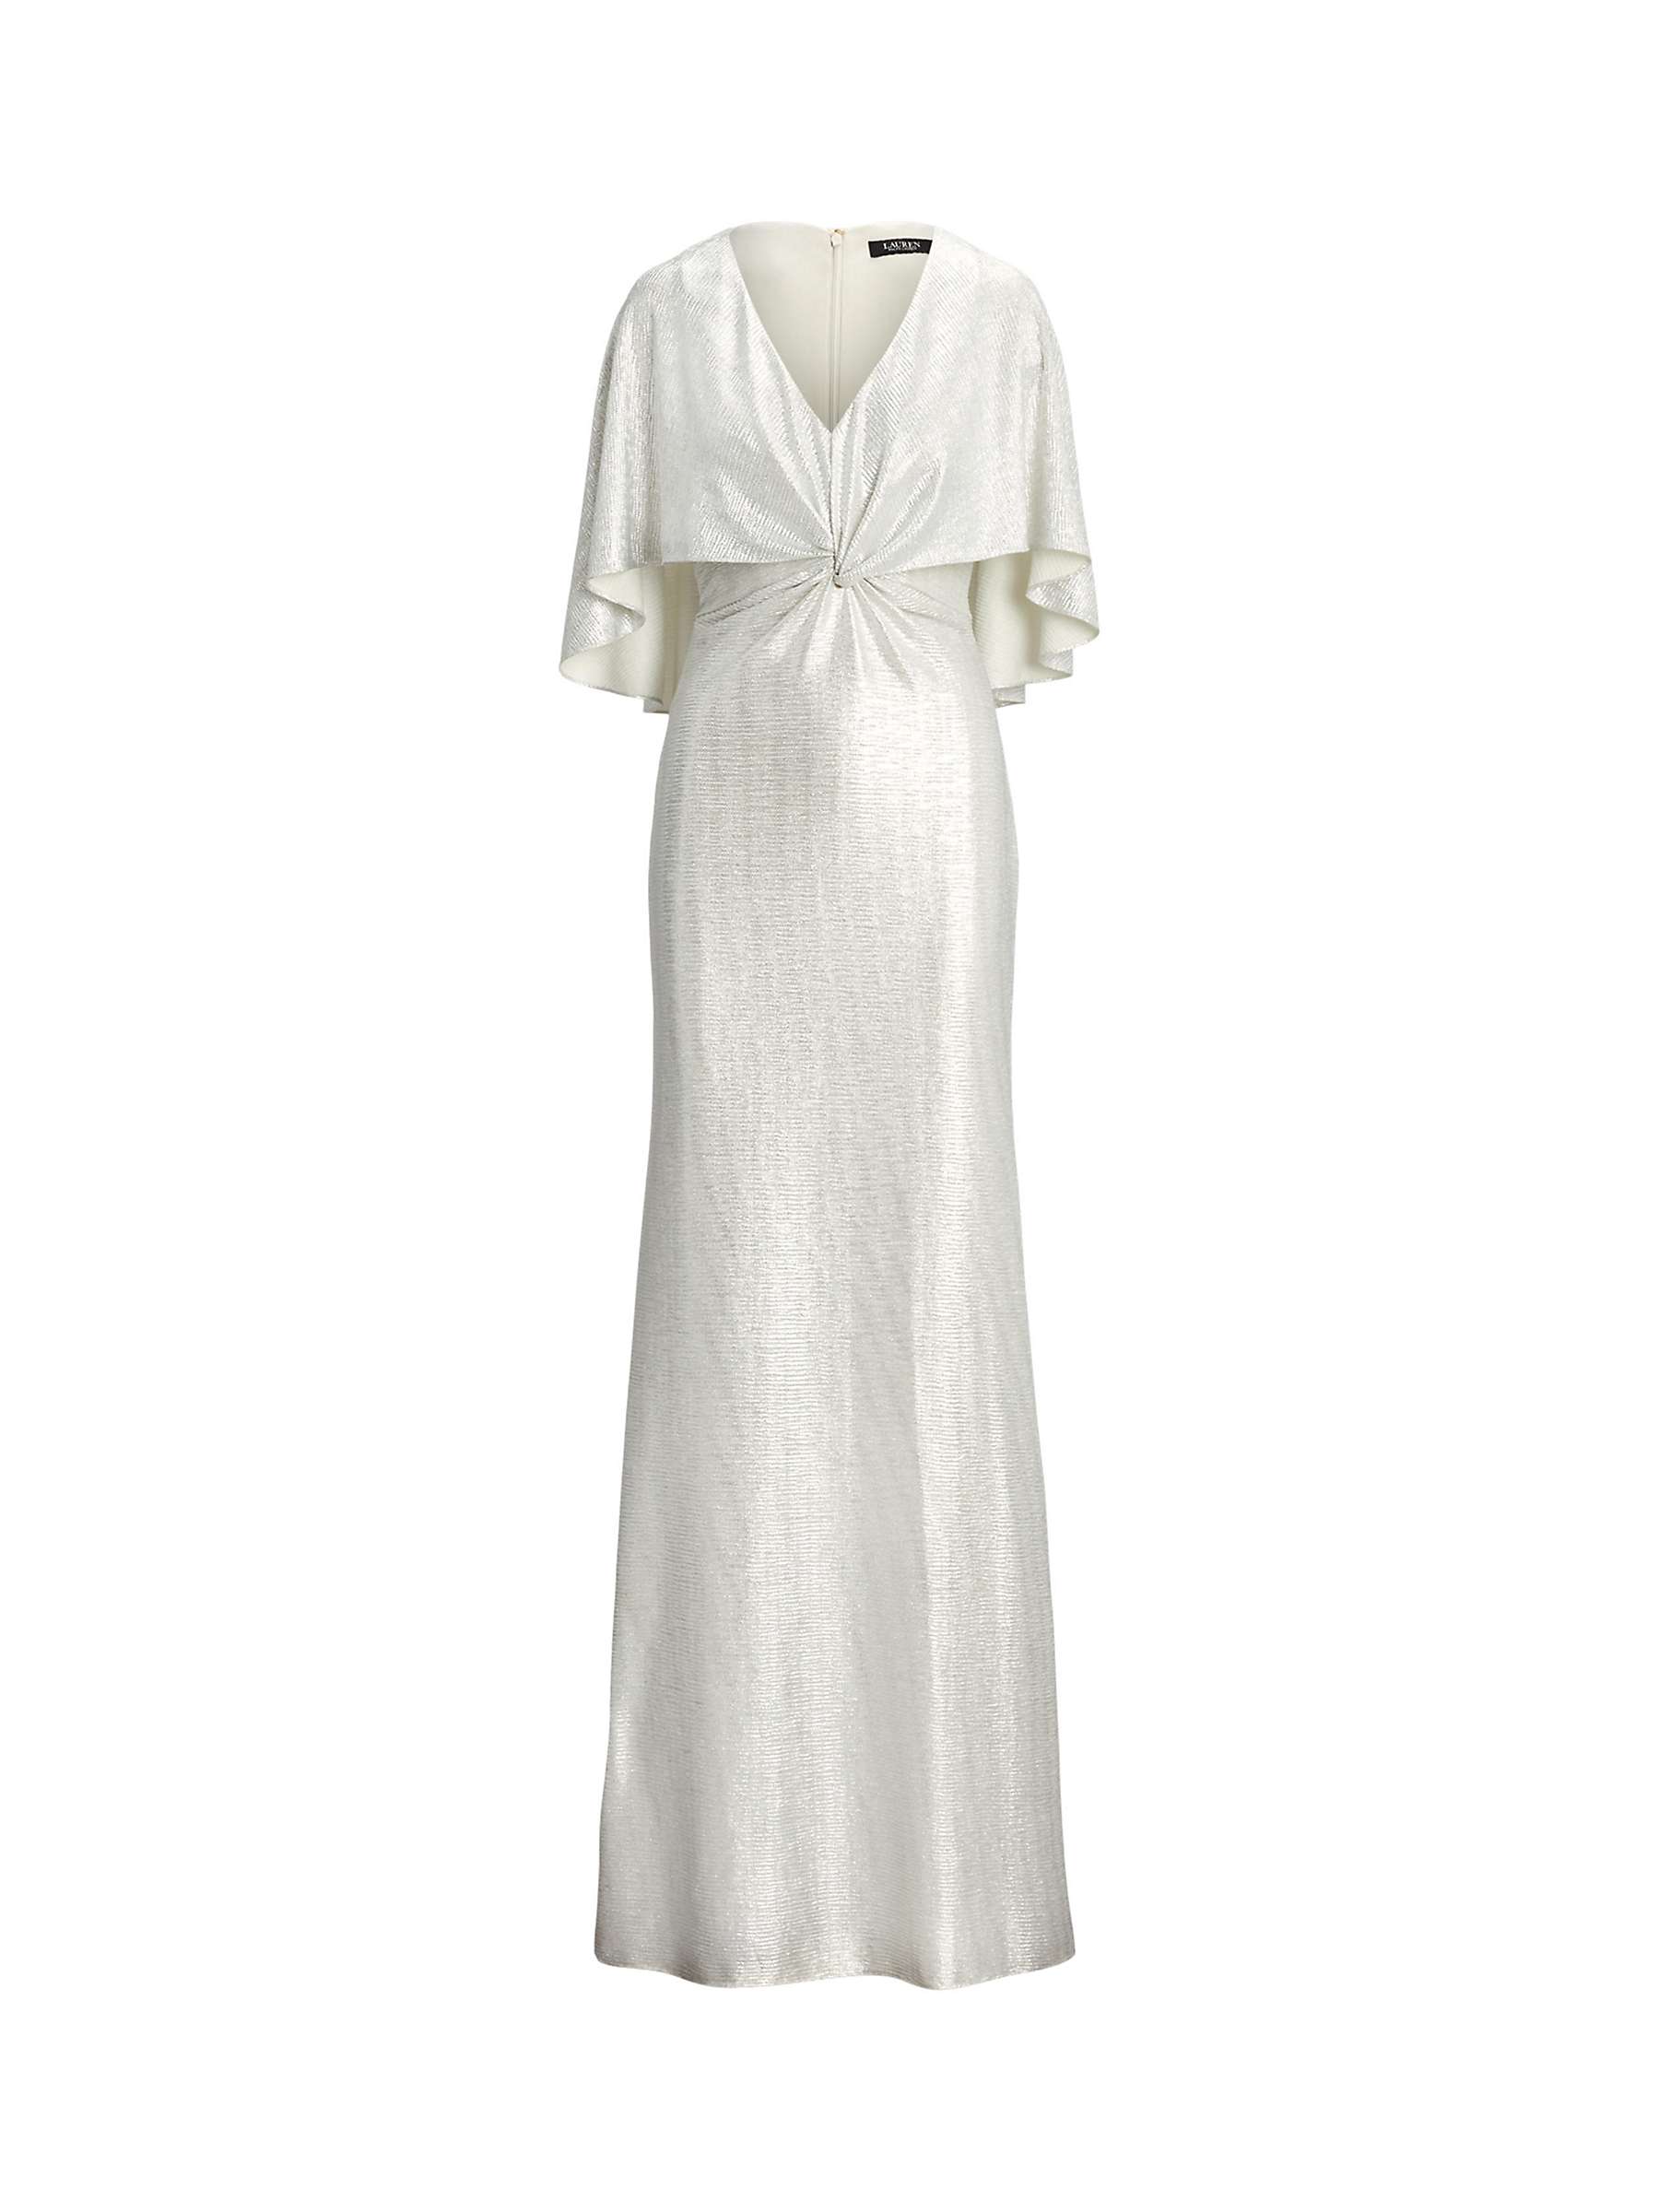 Buy Lauren Ralph Lauren Phinya Metallic Maxi Dress, Neutral Online at johnlewis.com